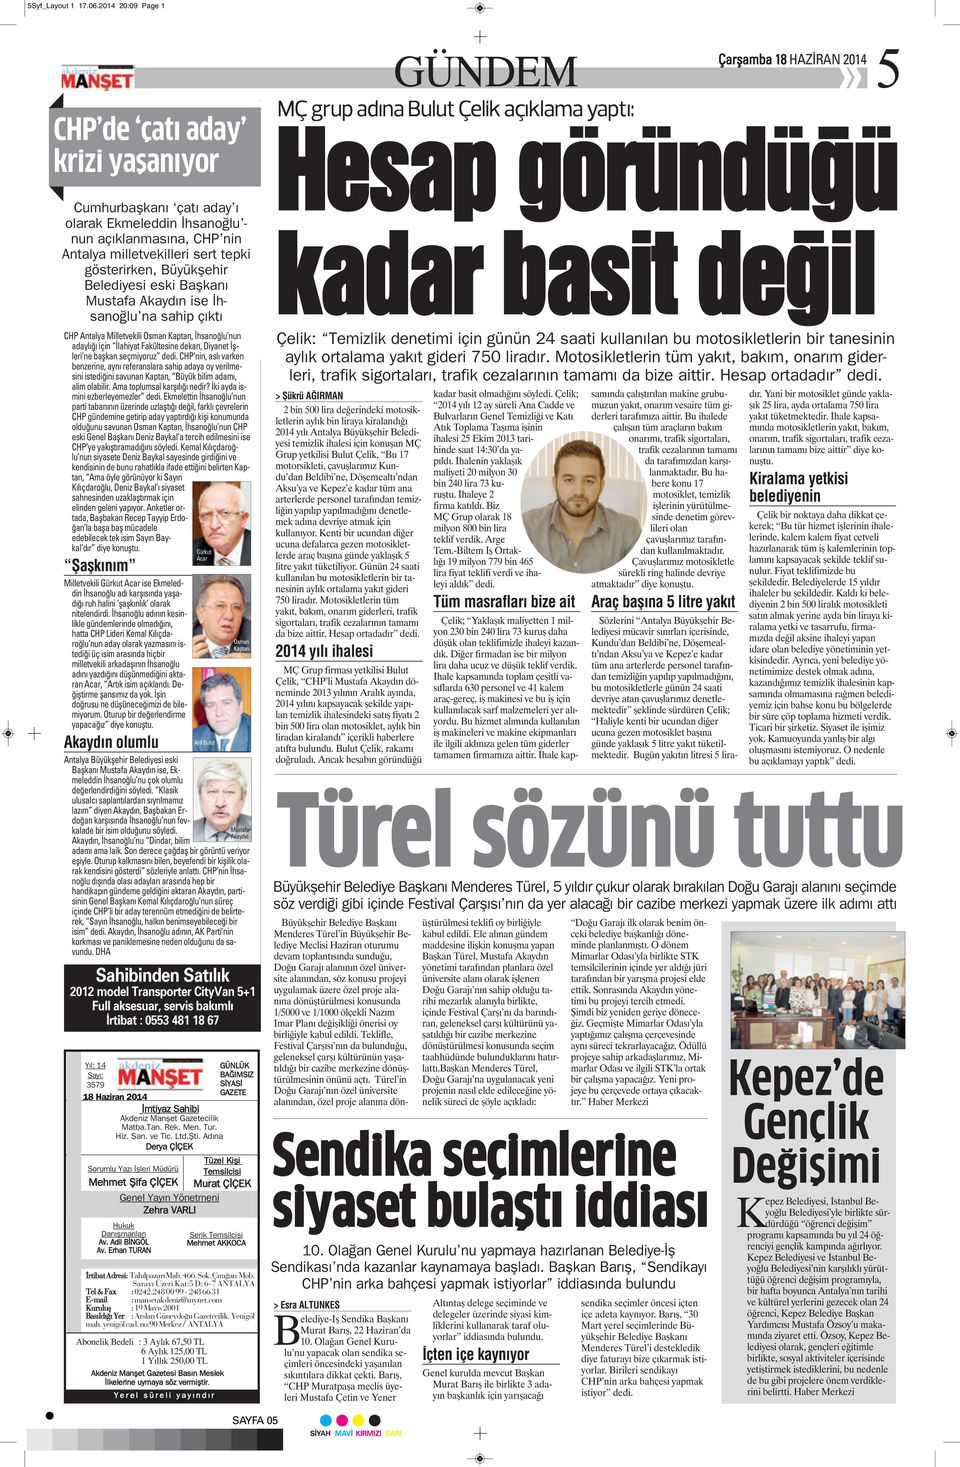 Belediyesi eski Başkanı Mustafa Akaydın ise İhsanoğlu na sahip çıktı CHP Antalya Milletvekili Osman Kaptan, İhsanoğlu nun adaylığı için İlahiyat Fakültesine dekan, Diyanet İşleri ne başkan seçmiyoruz